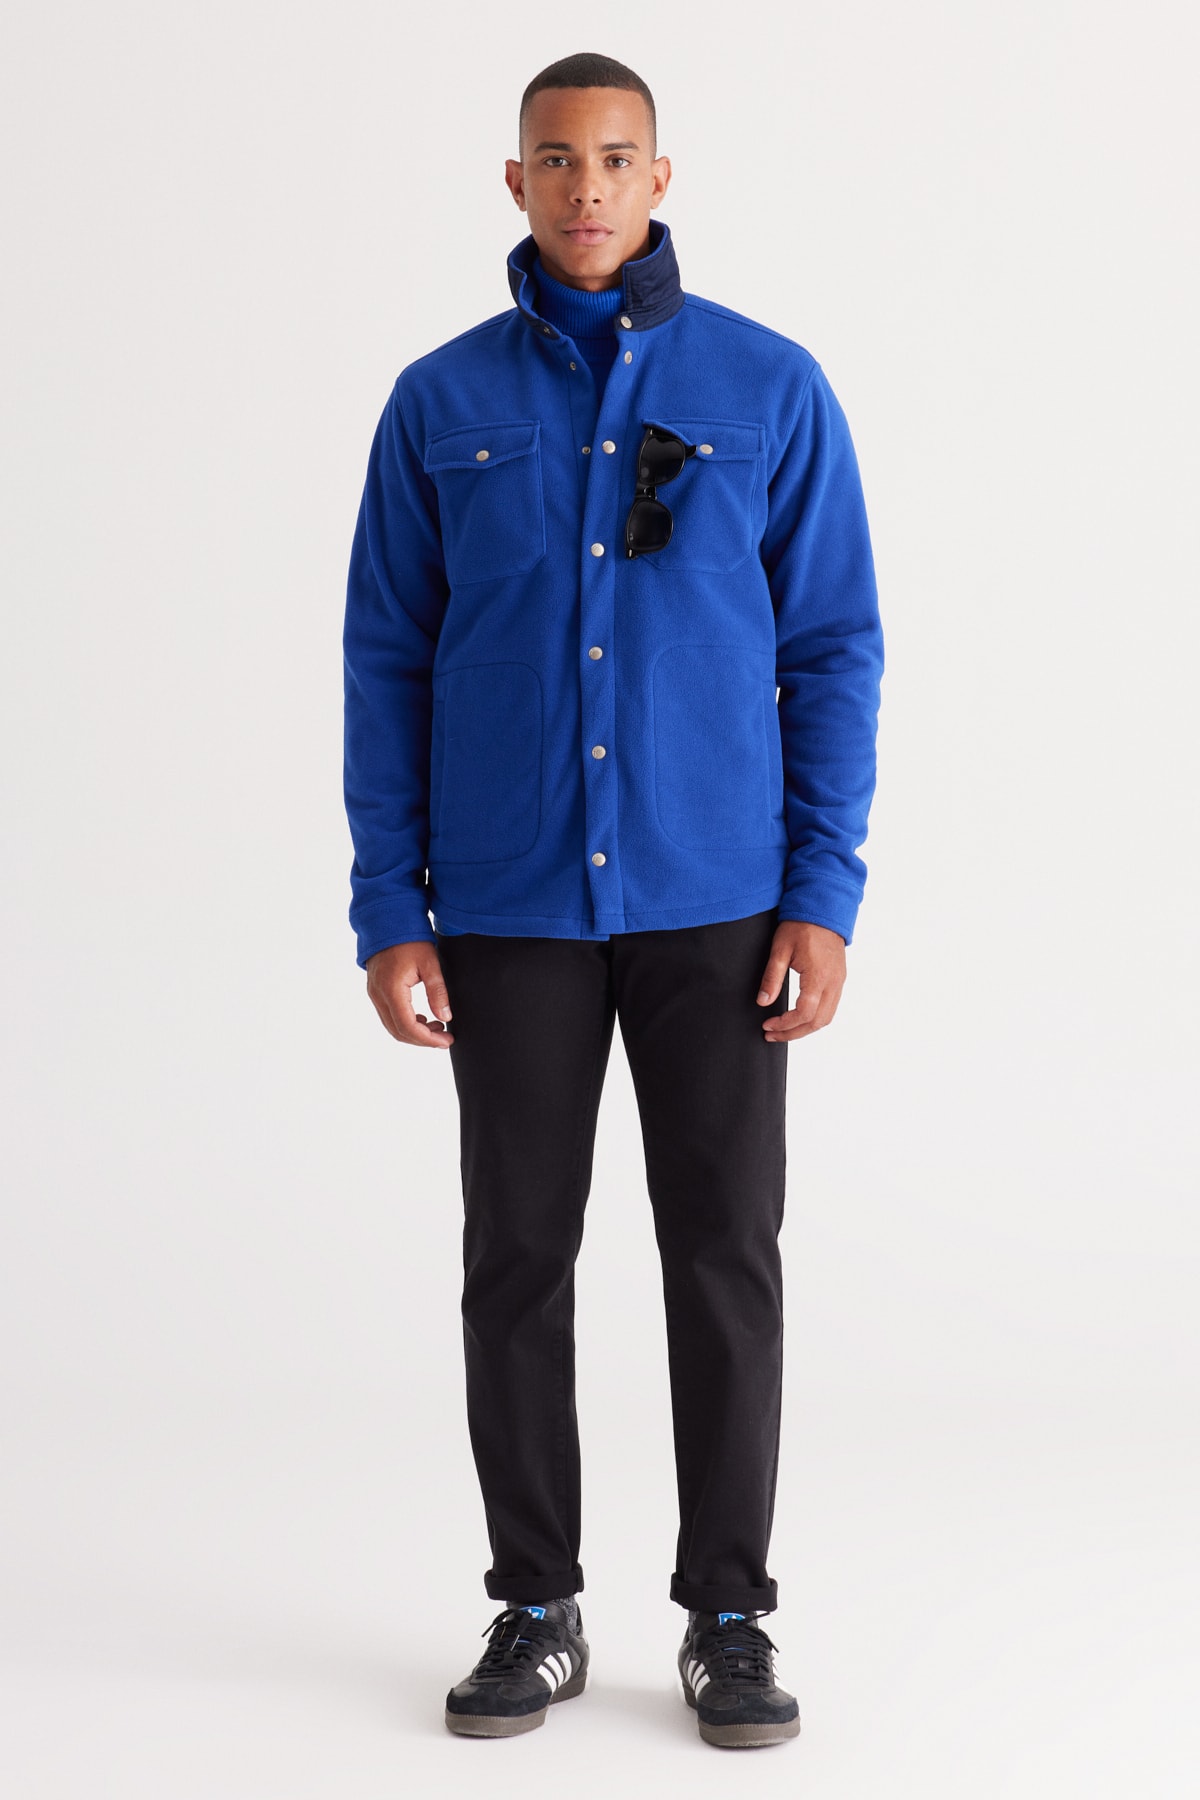 Levně AC&Co / Altınyıldız Classics Men's Sax-Navy Blue Standard Fit Normal Cut Shirt Collar Pocket Fleece Jacket.